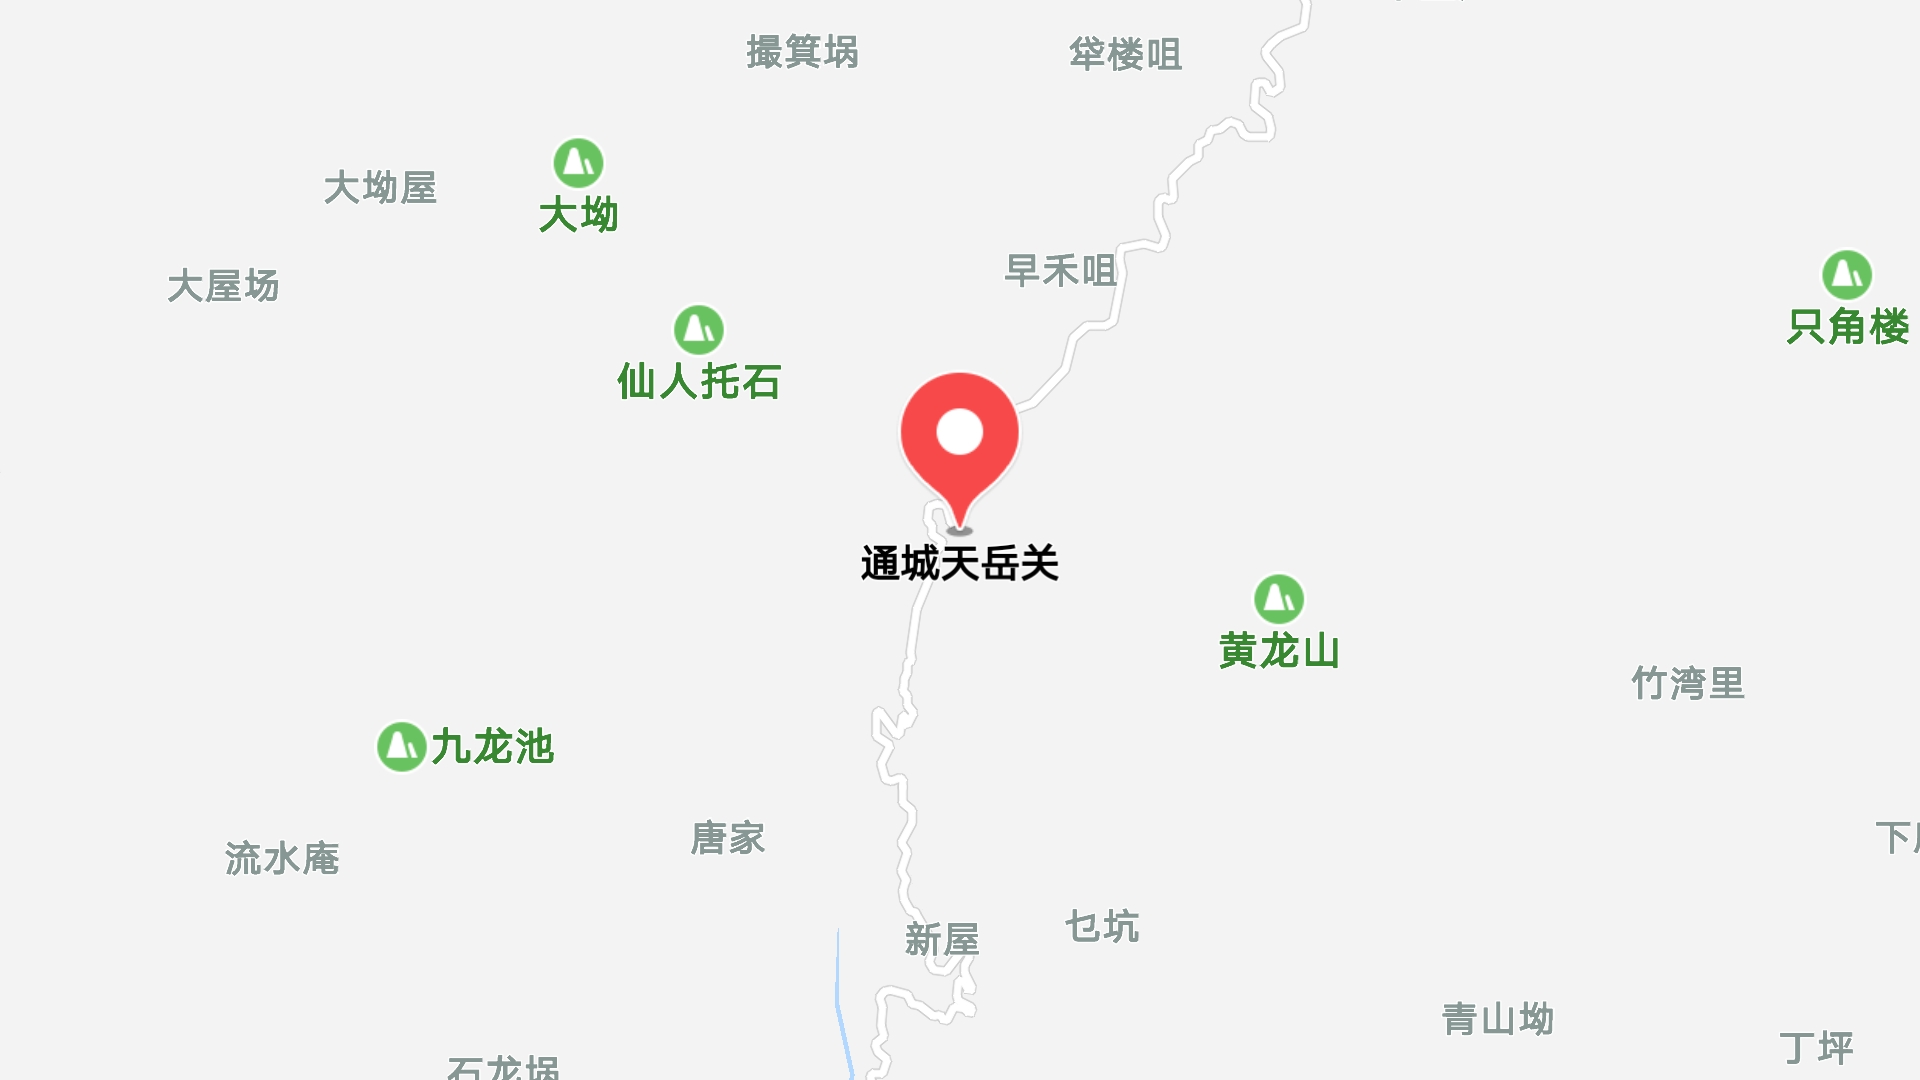 地图信息 地址:咸宁市通城县 反馈